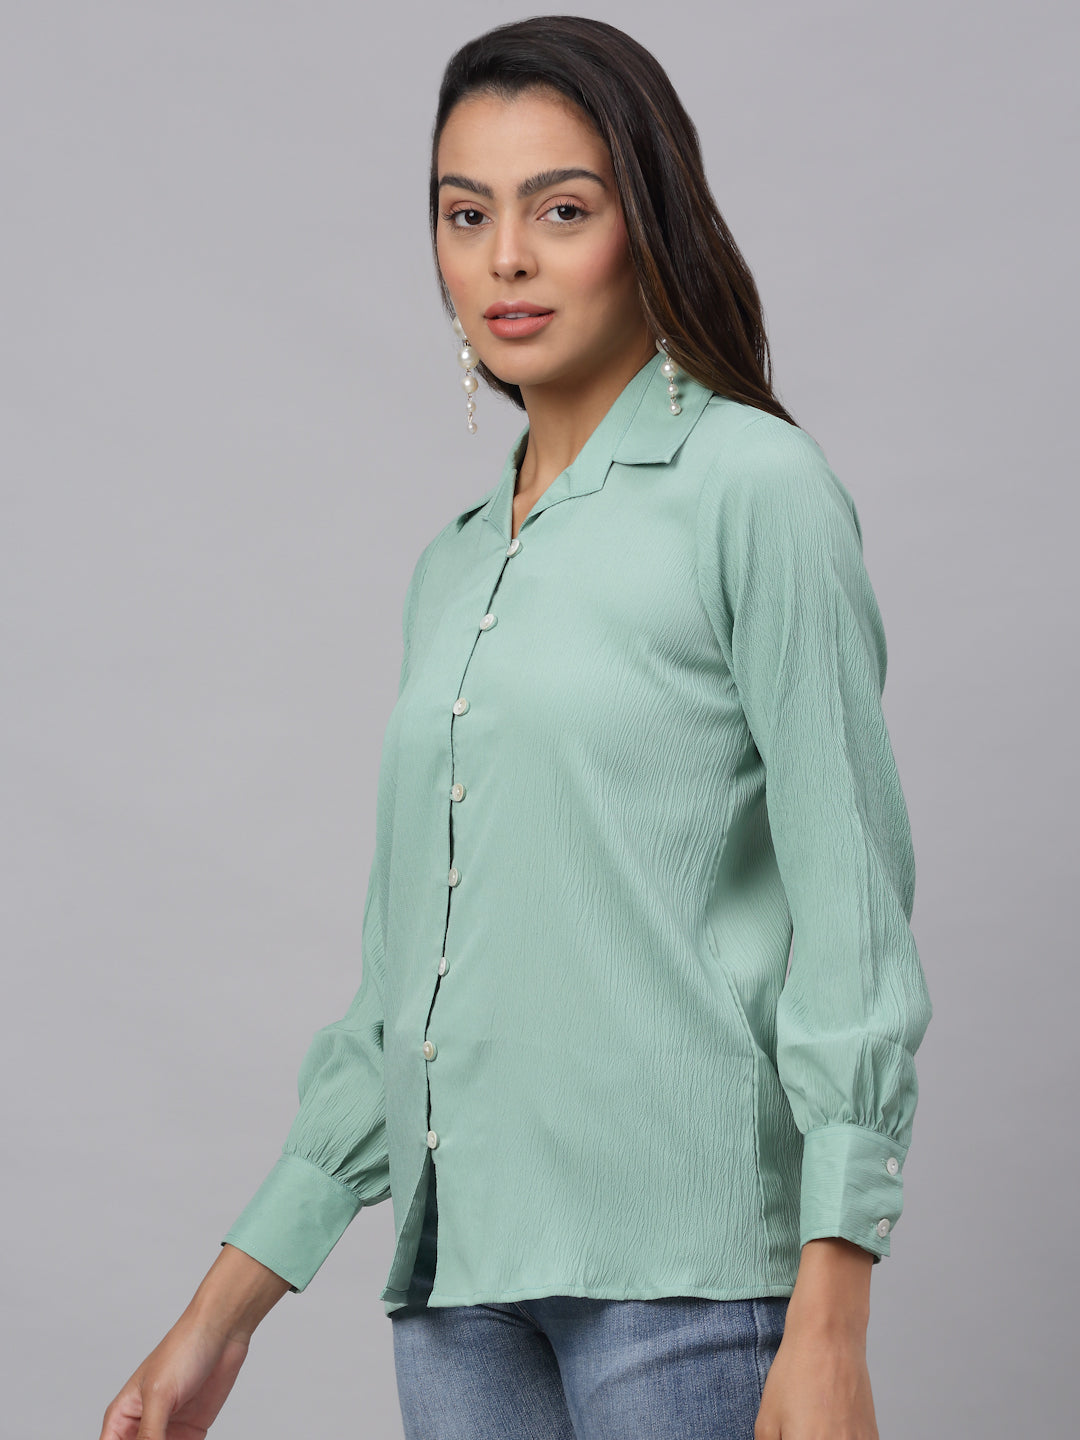 Jainish Women's Green Solid Shirt - Green - Distacart